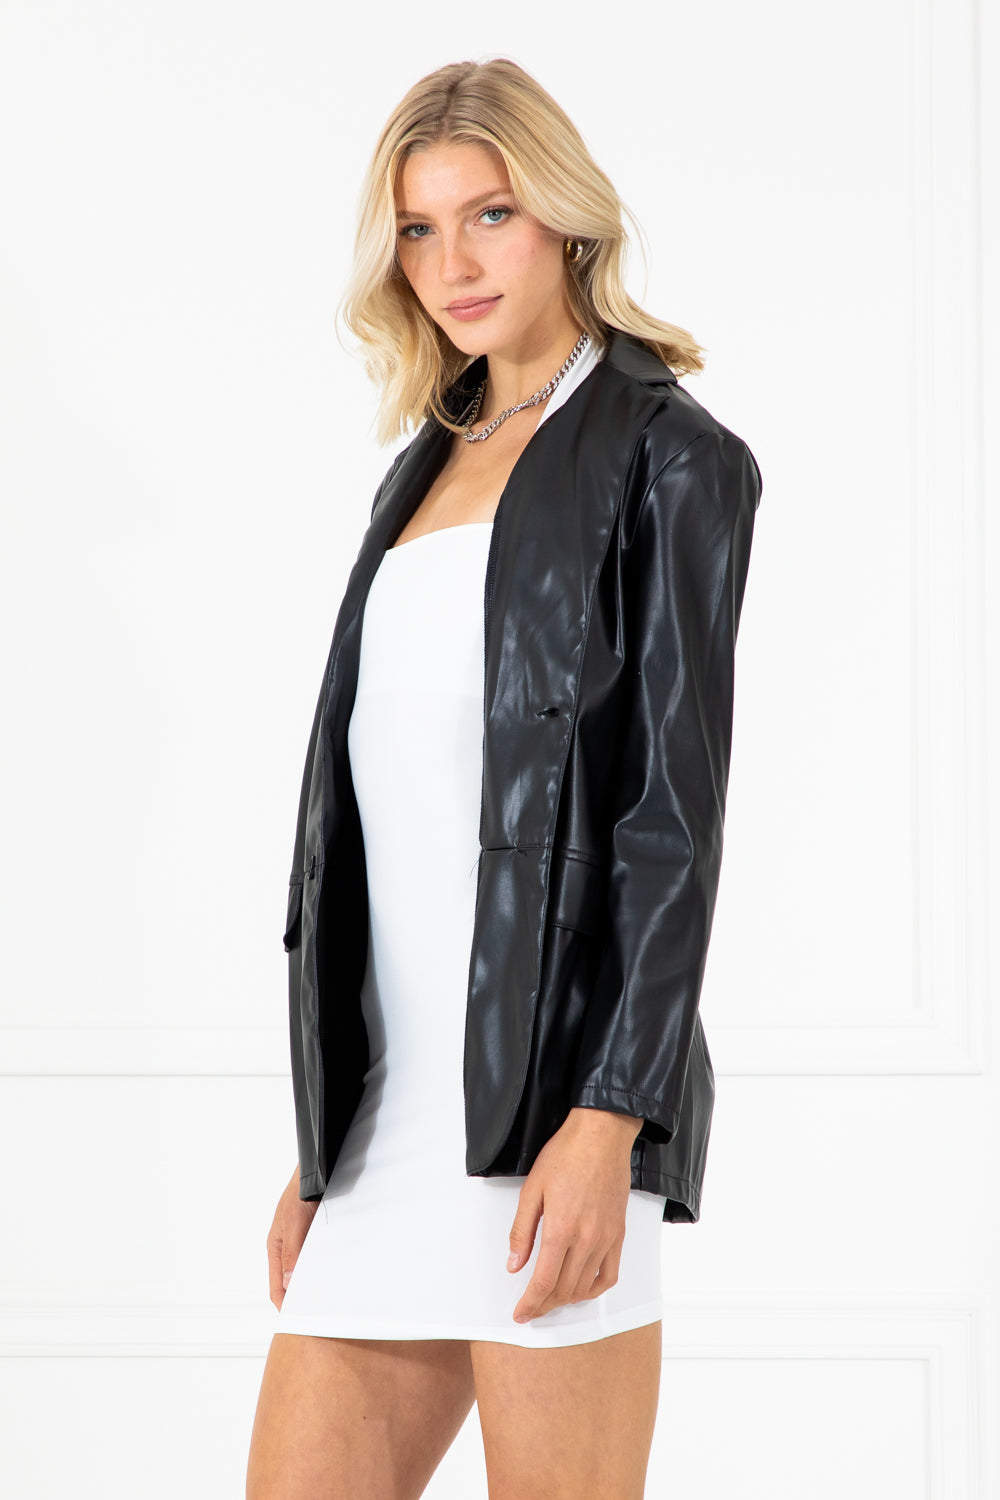 Maude Black Faux Leather Oversized Jacket Blazer